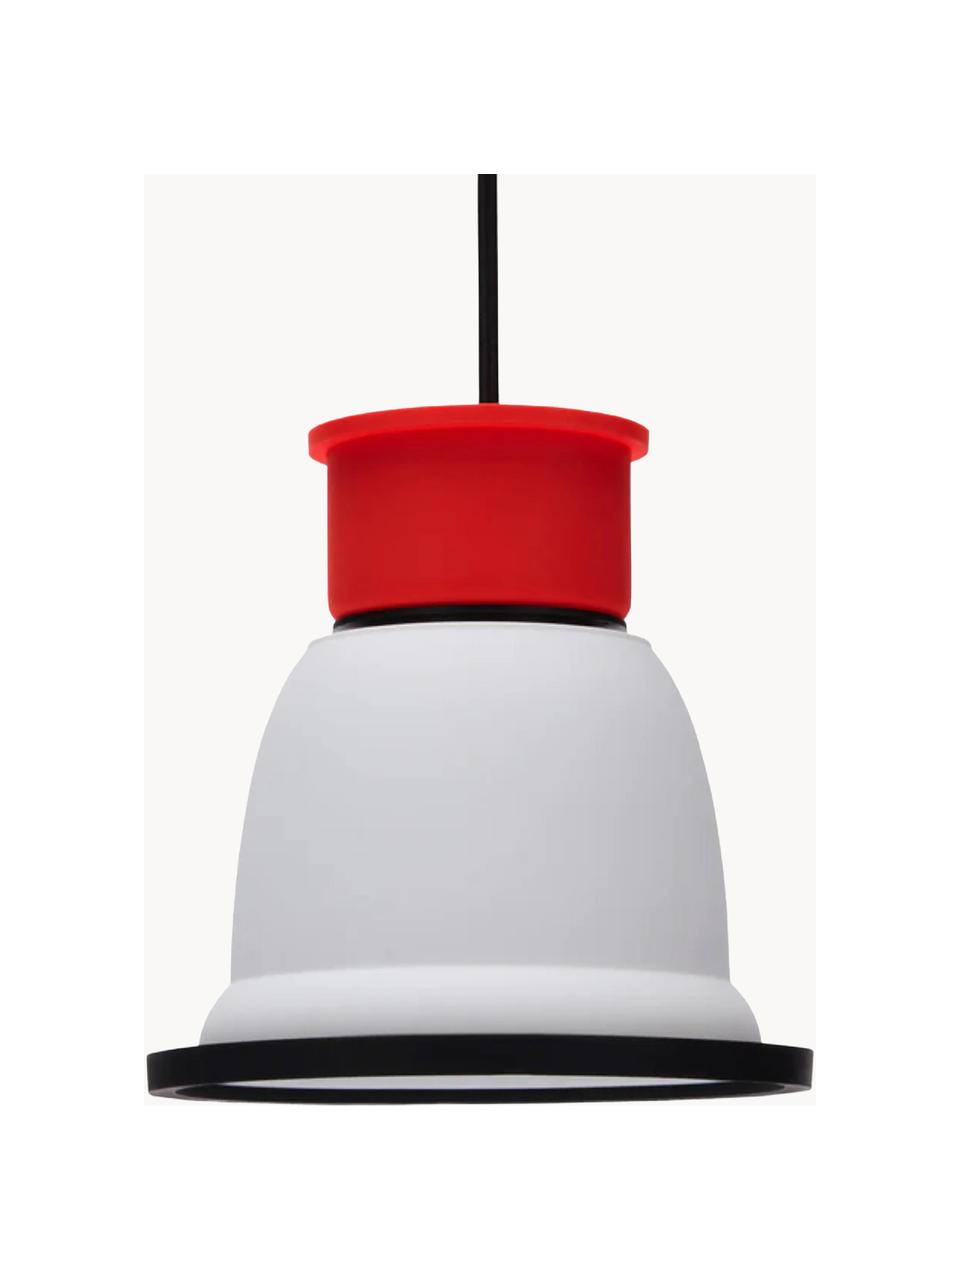 Petite suspension CL1, Blanc, rouge, noir, Ø 18 x H 18 cm